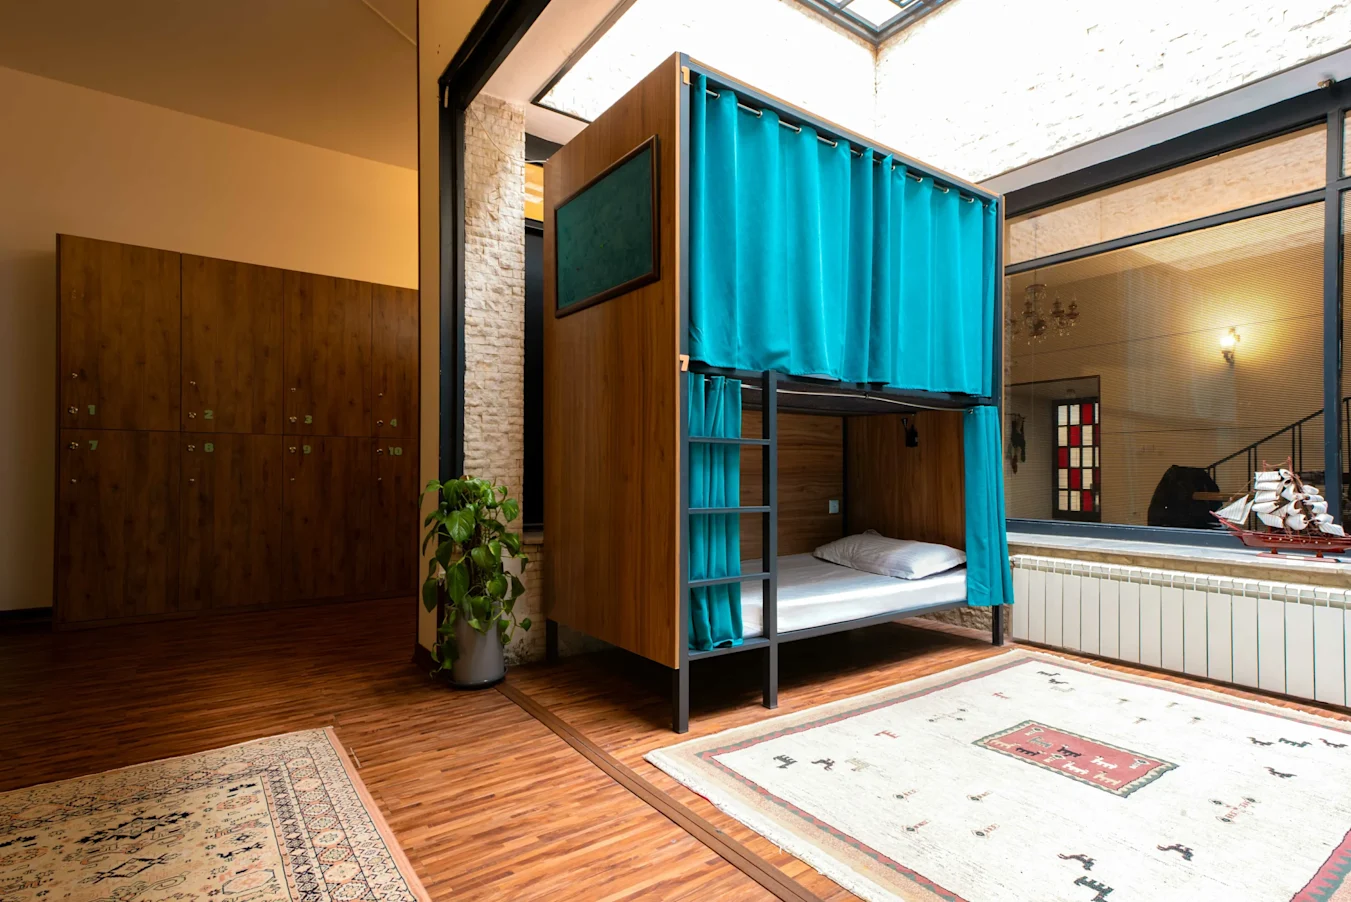 12-bed Mixed Dorm in Sarv Hostel